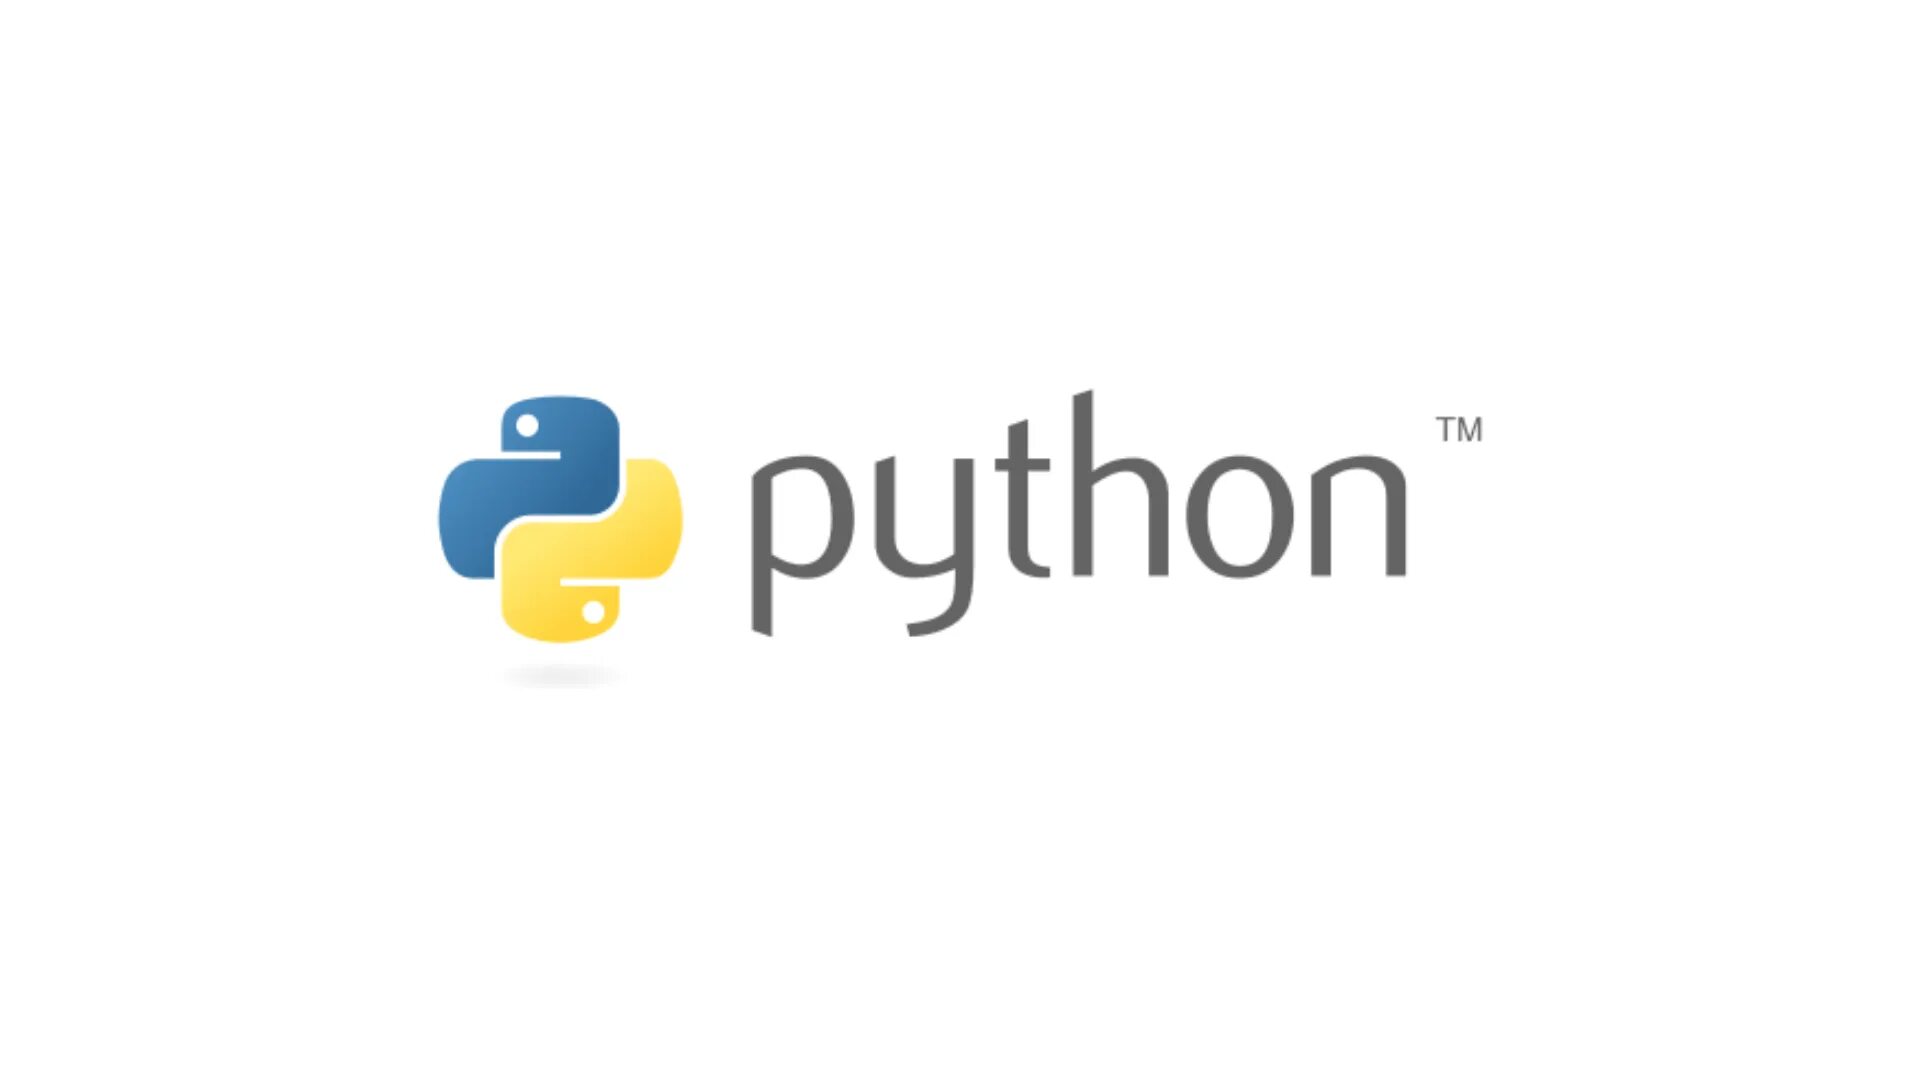 Логотип языка python. Python логотип. Старый логотип питона. Питон язык программирования логотип. Первый логотип Python.